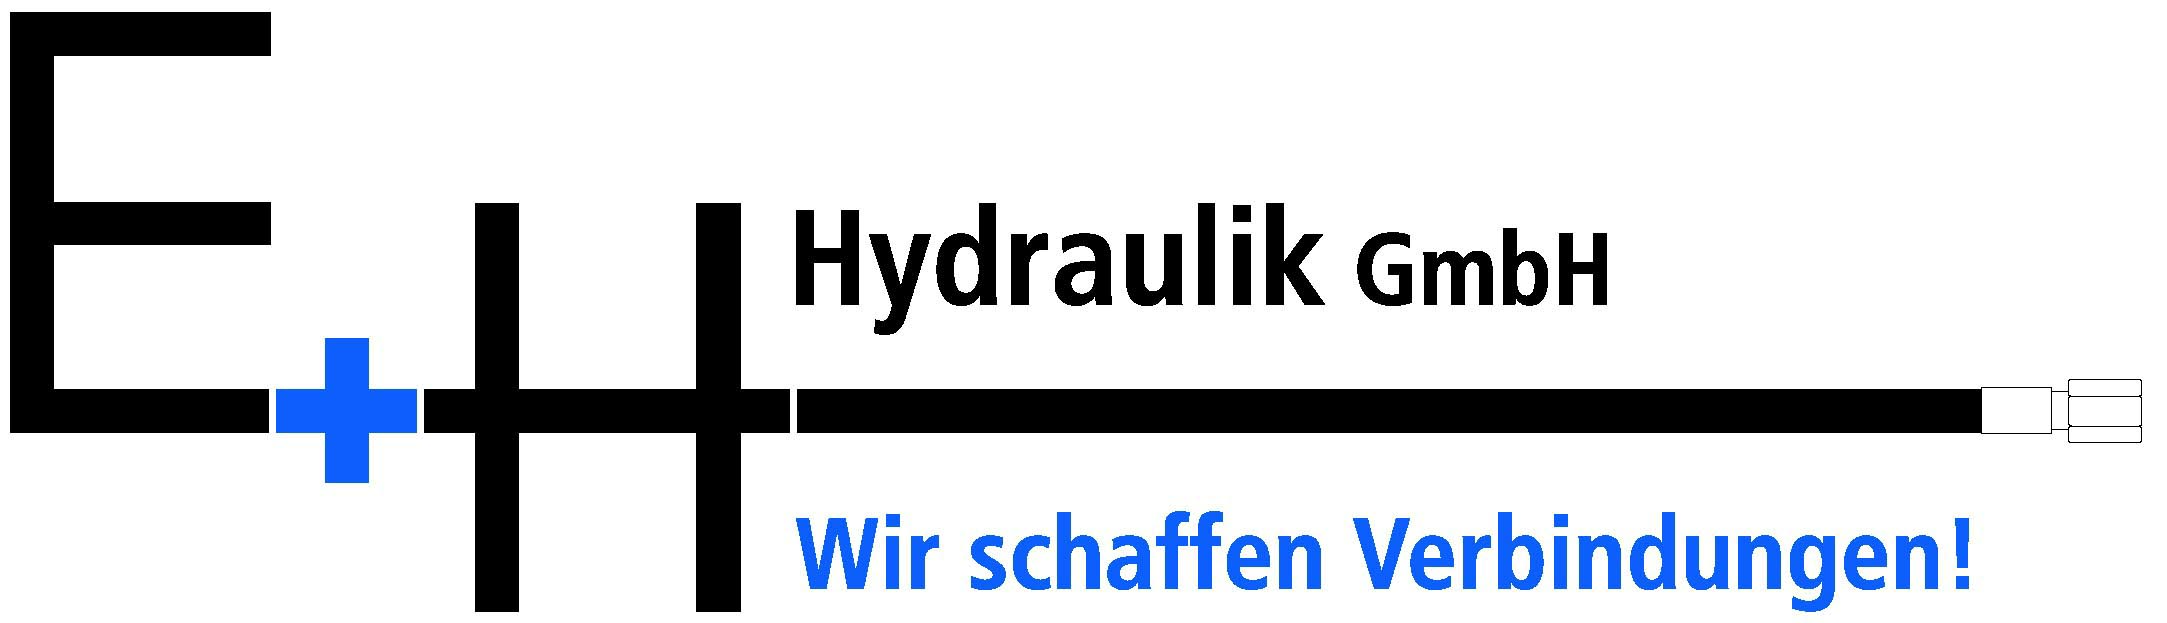 eh-hydraulik